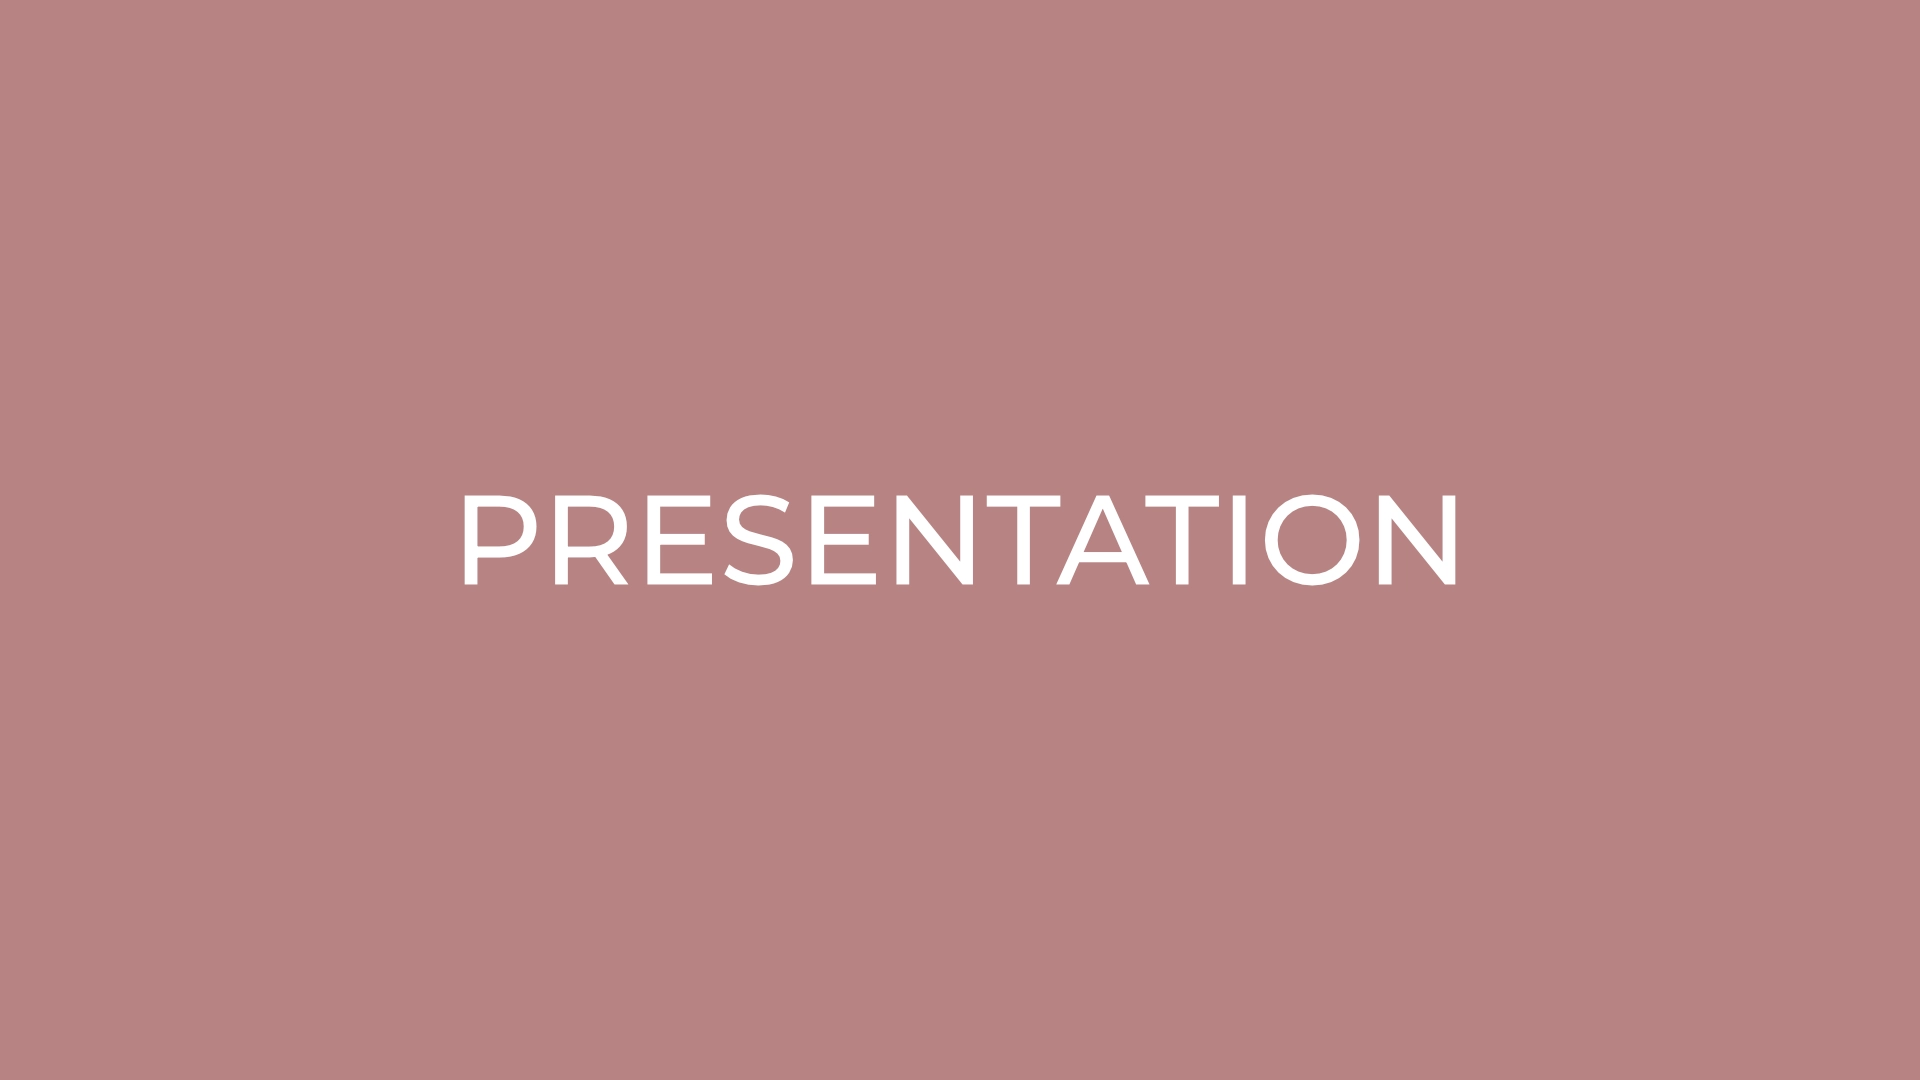 Presentation: ”Umi hotaru”